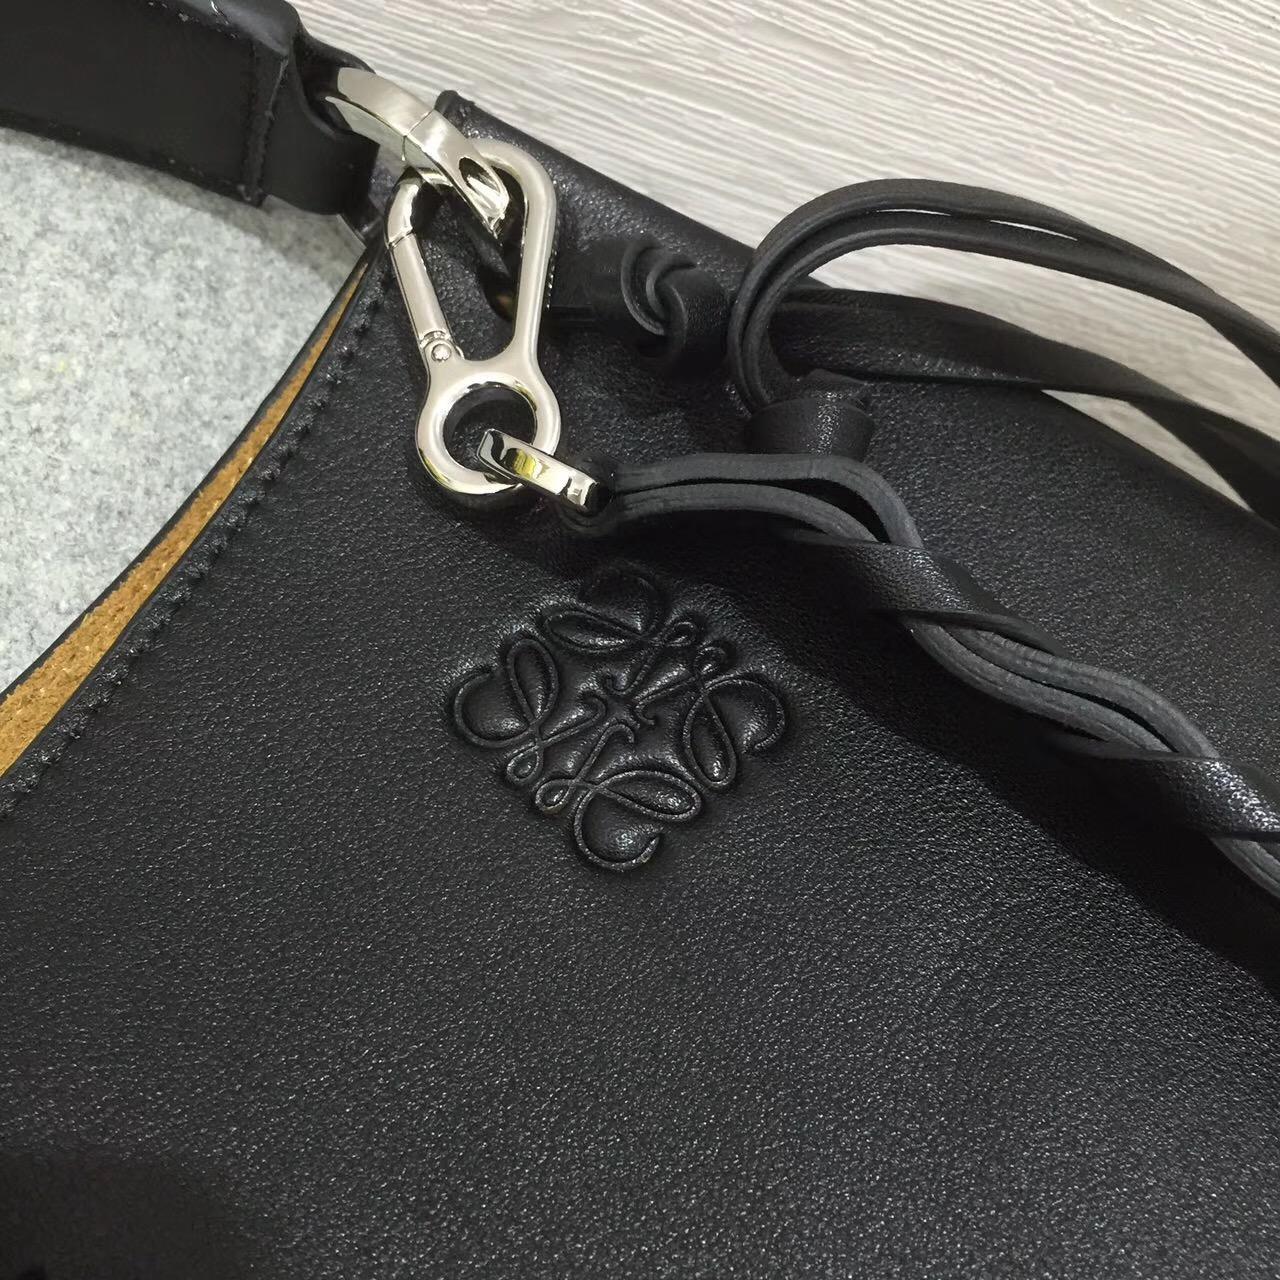 羅意威 Loewe Fortune hobo bag系列限量版半月包 黑色進口細紋小牛皮